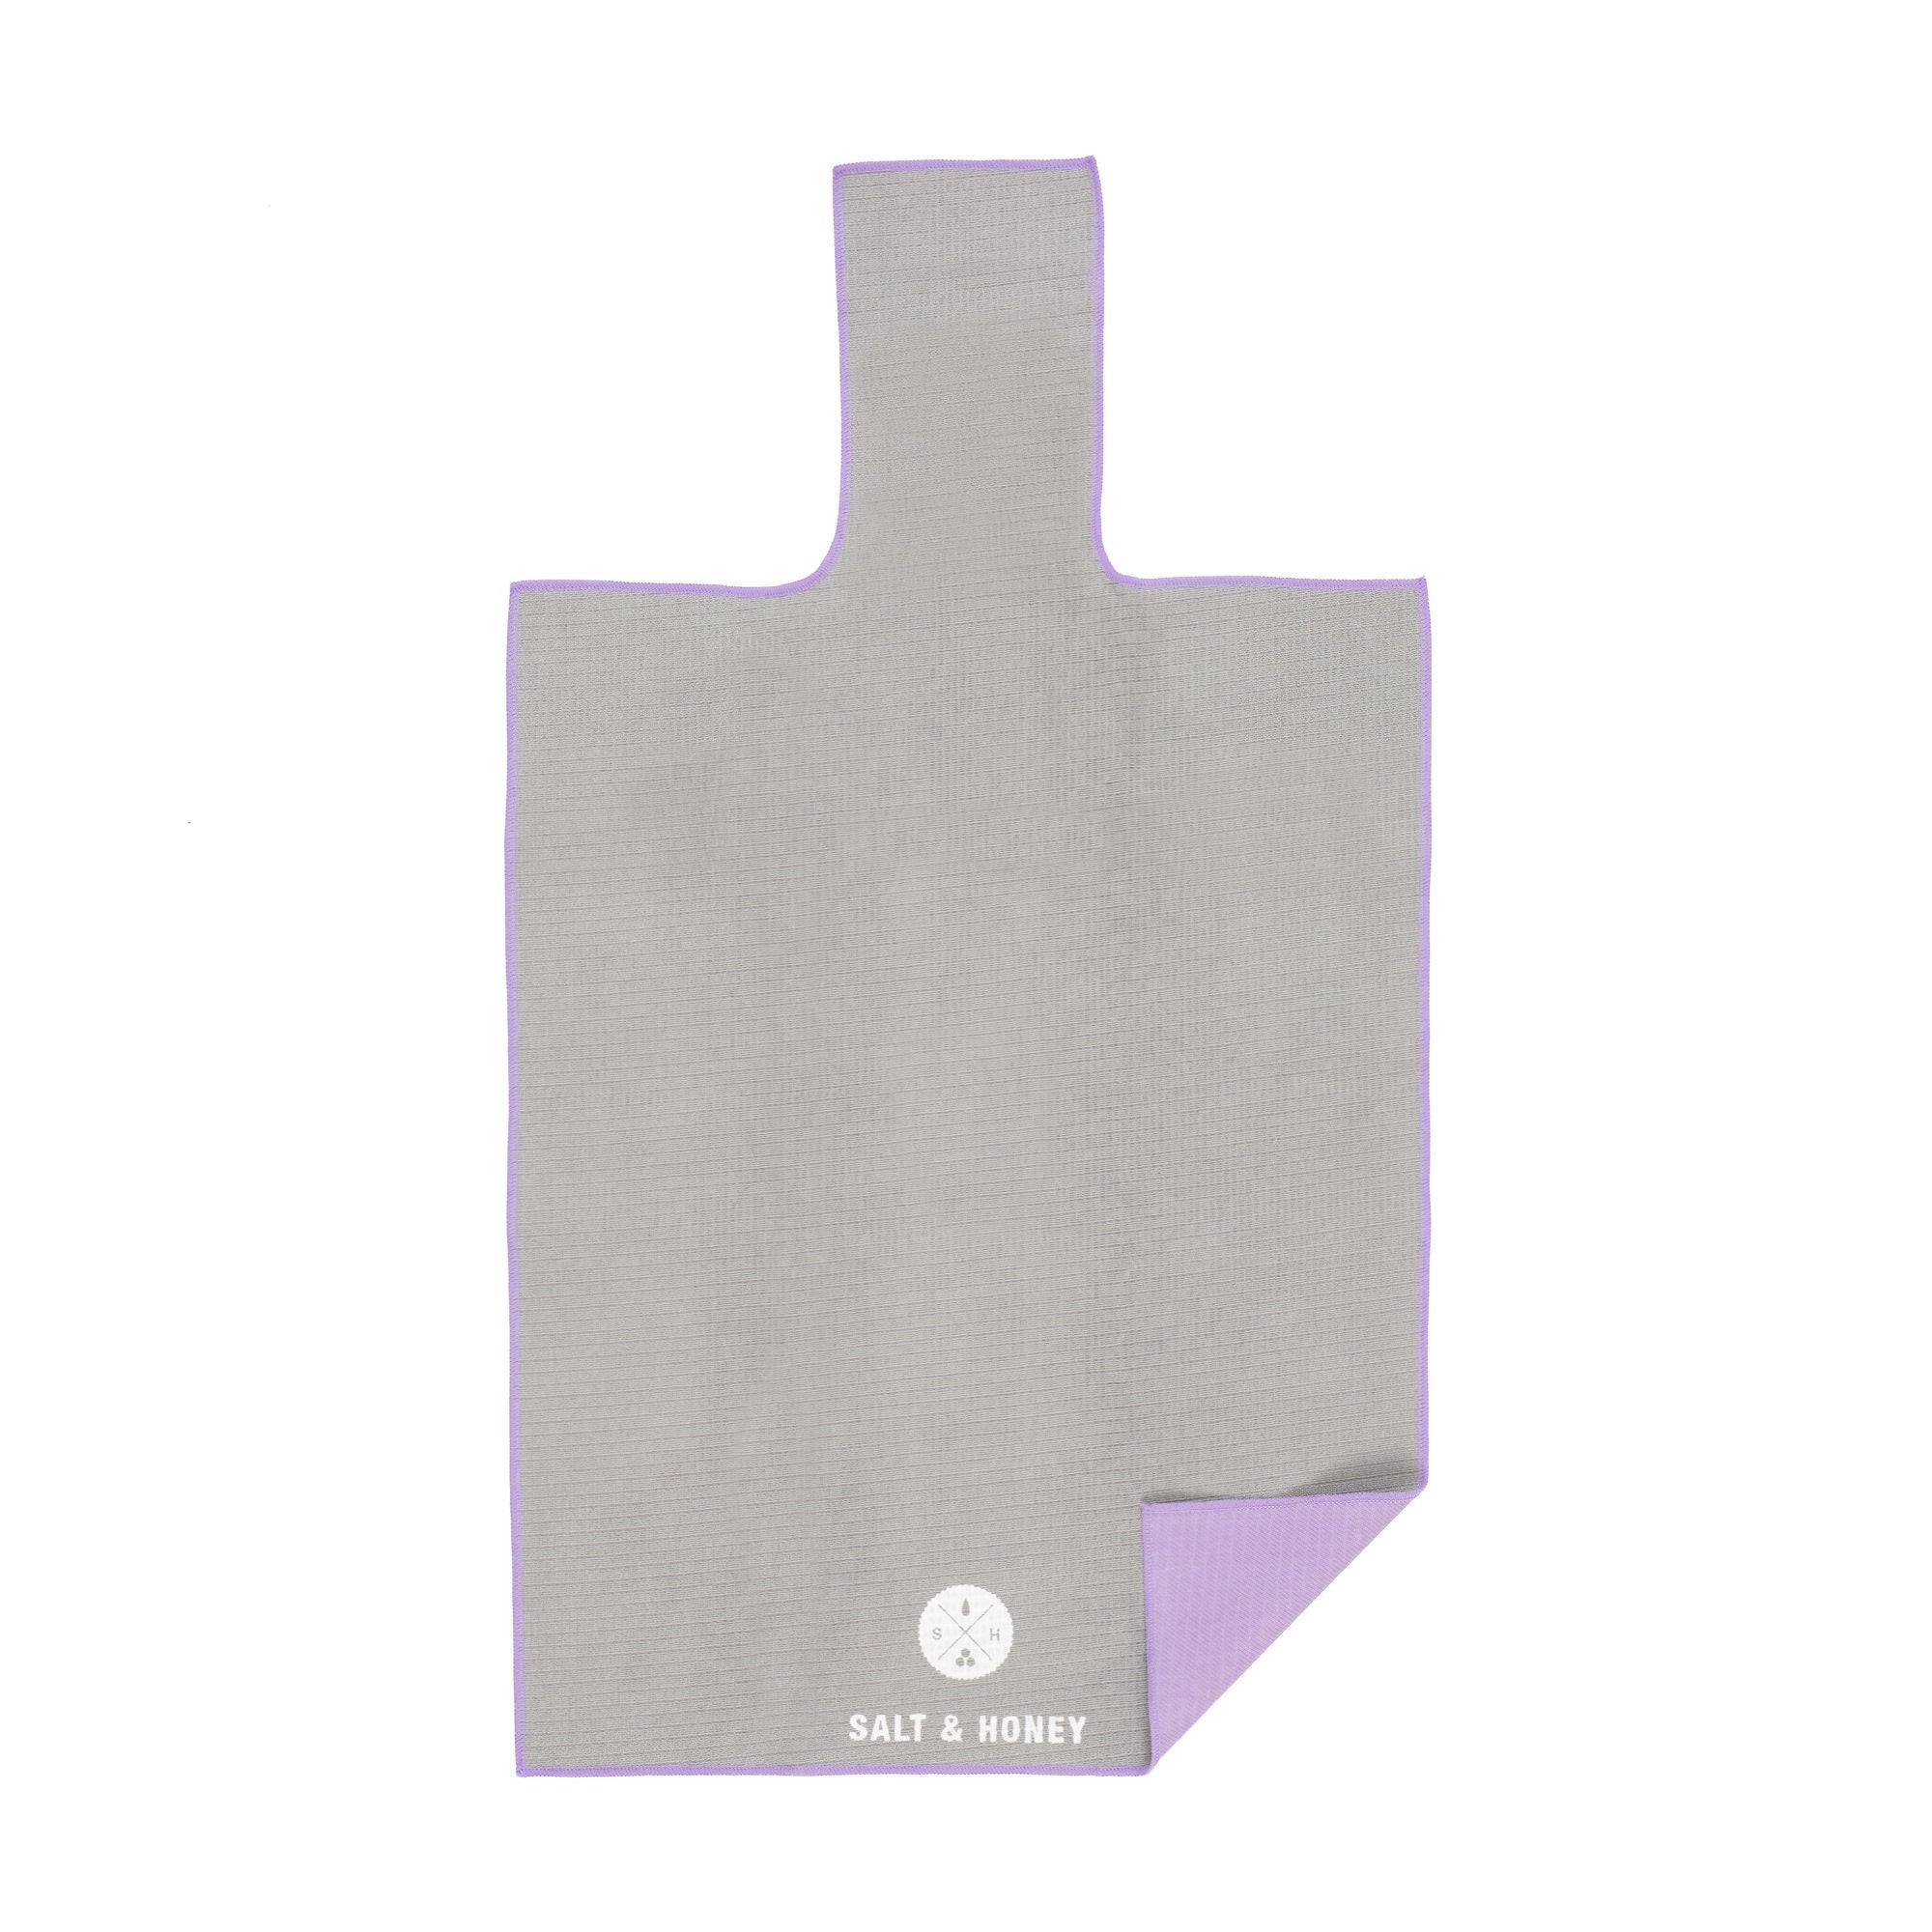 Salt & Honey Pilates Reformer Towel - Grey/Purple – C.O.R.E. grow strong.